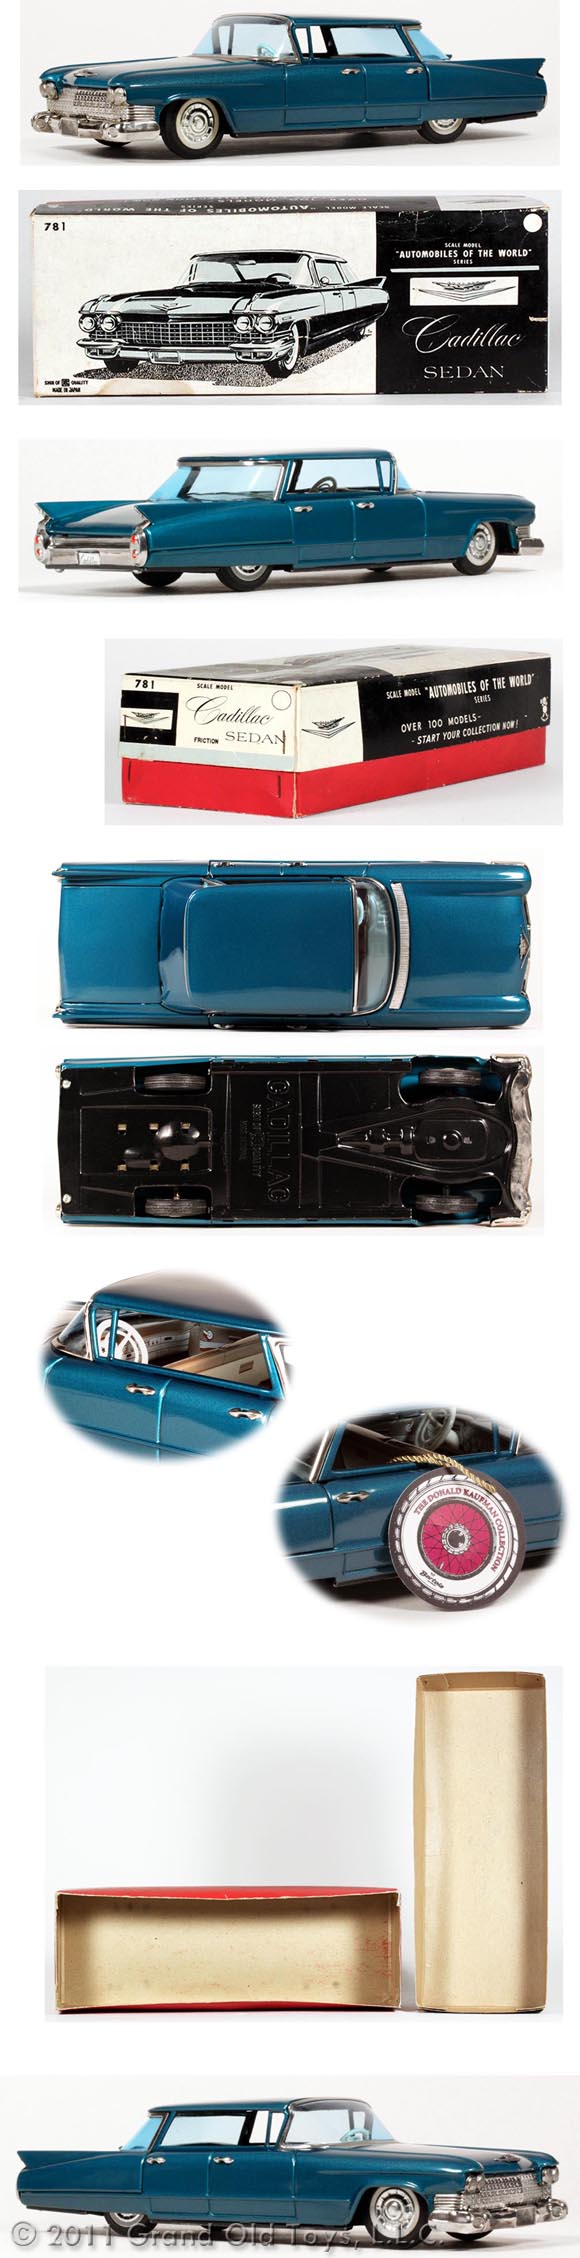 1960 Bandai Cadillac Fleetwood Sedan In Original Box